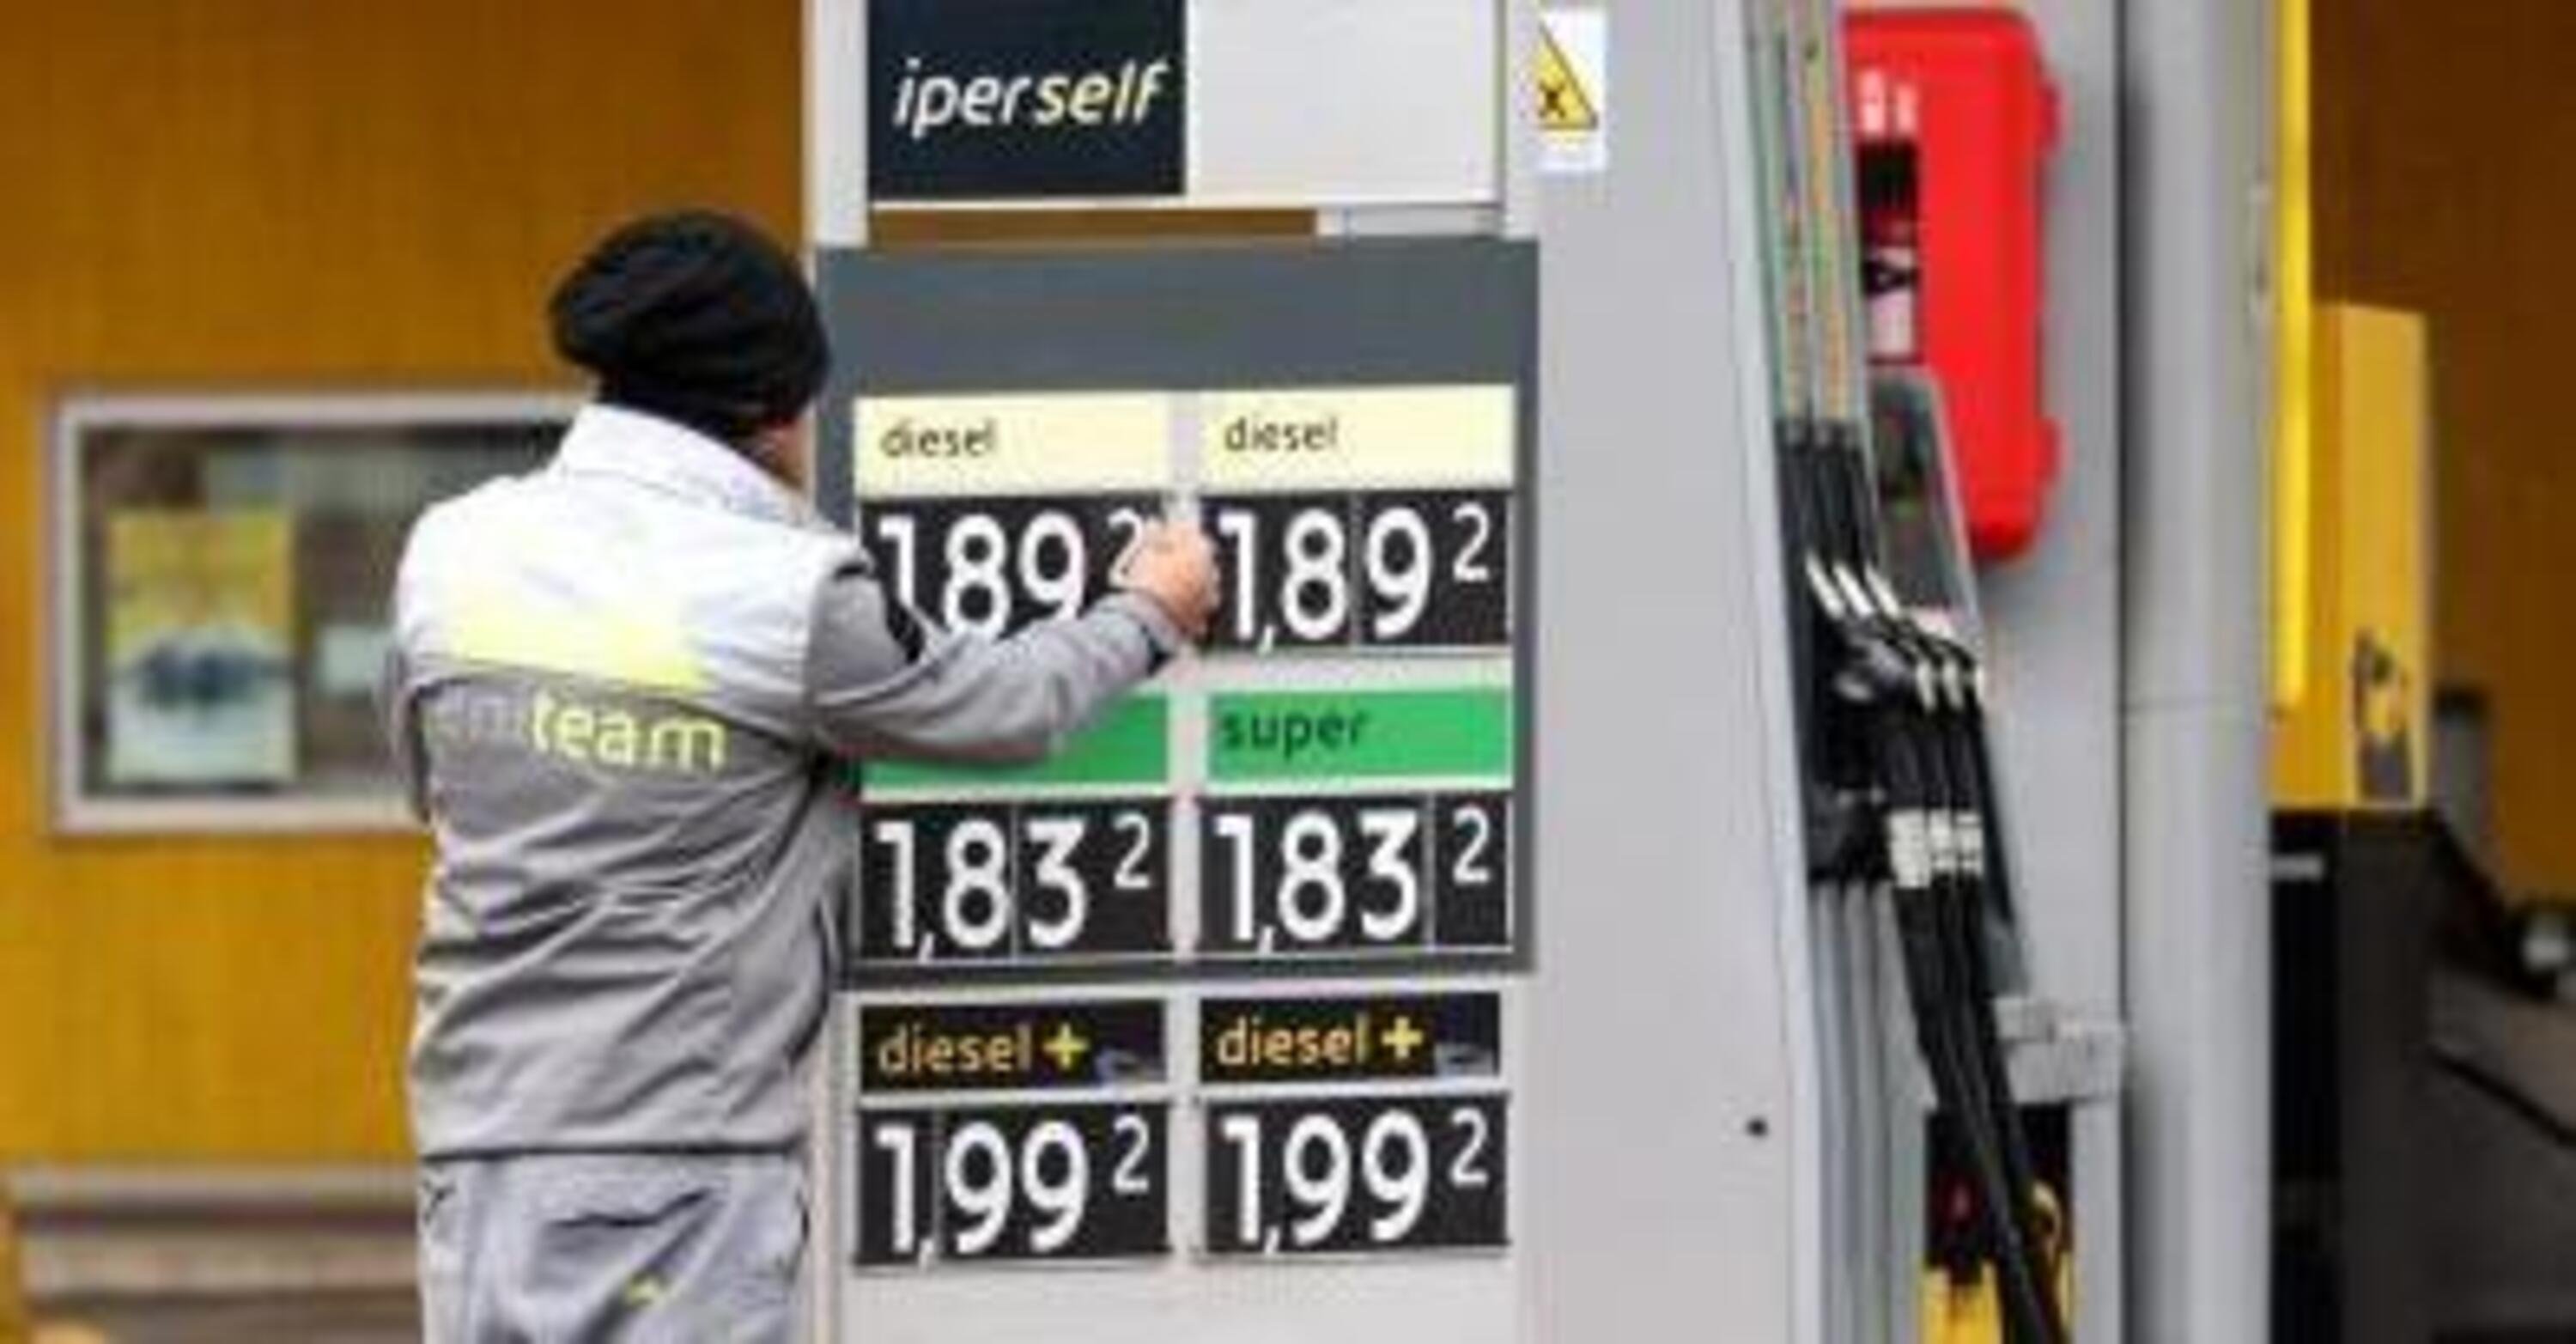 Perch&eacute; i carburanti hanno prezzi sempre diversi?